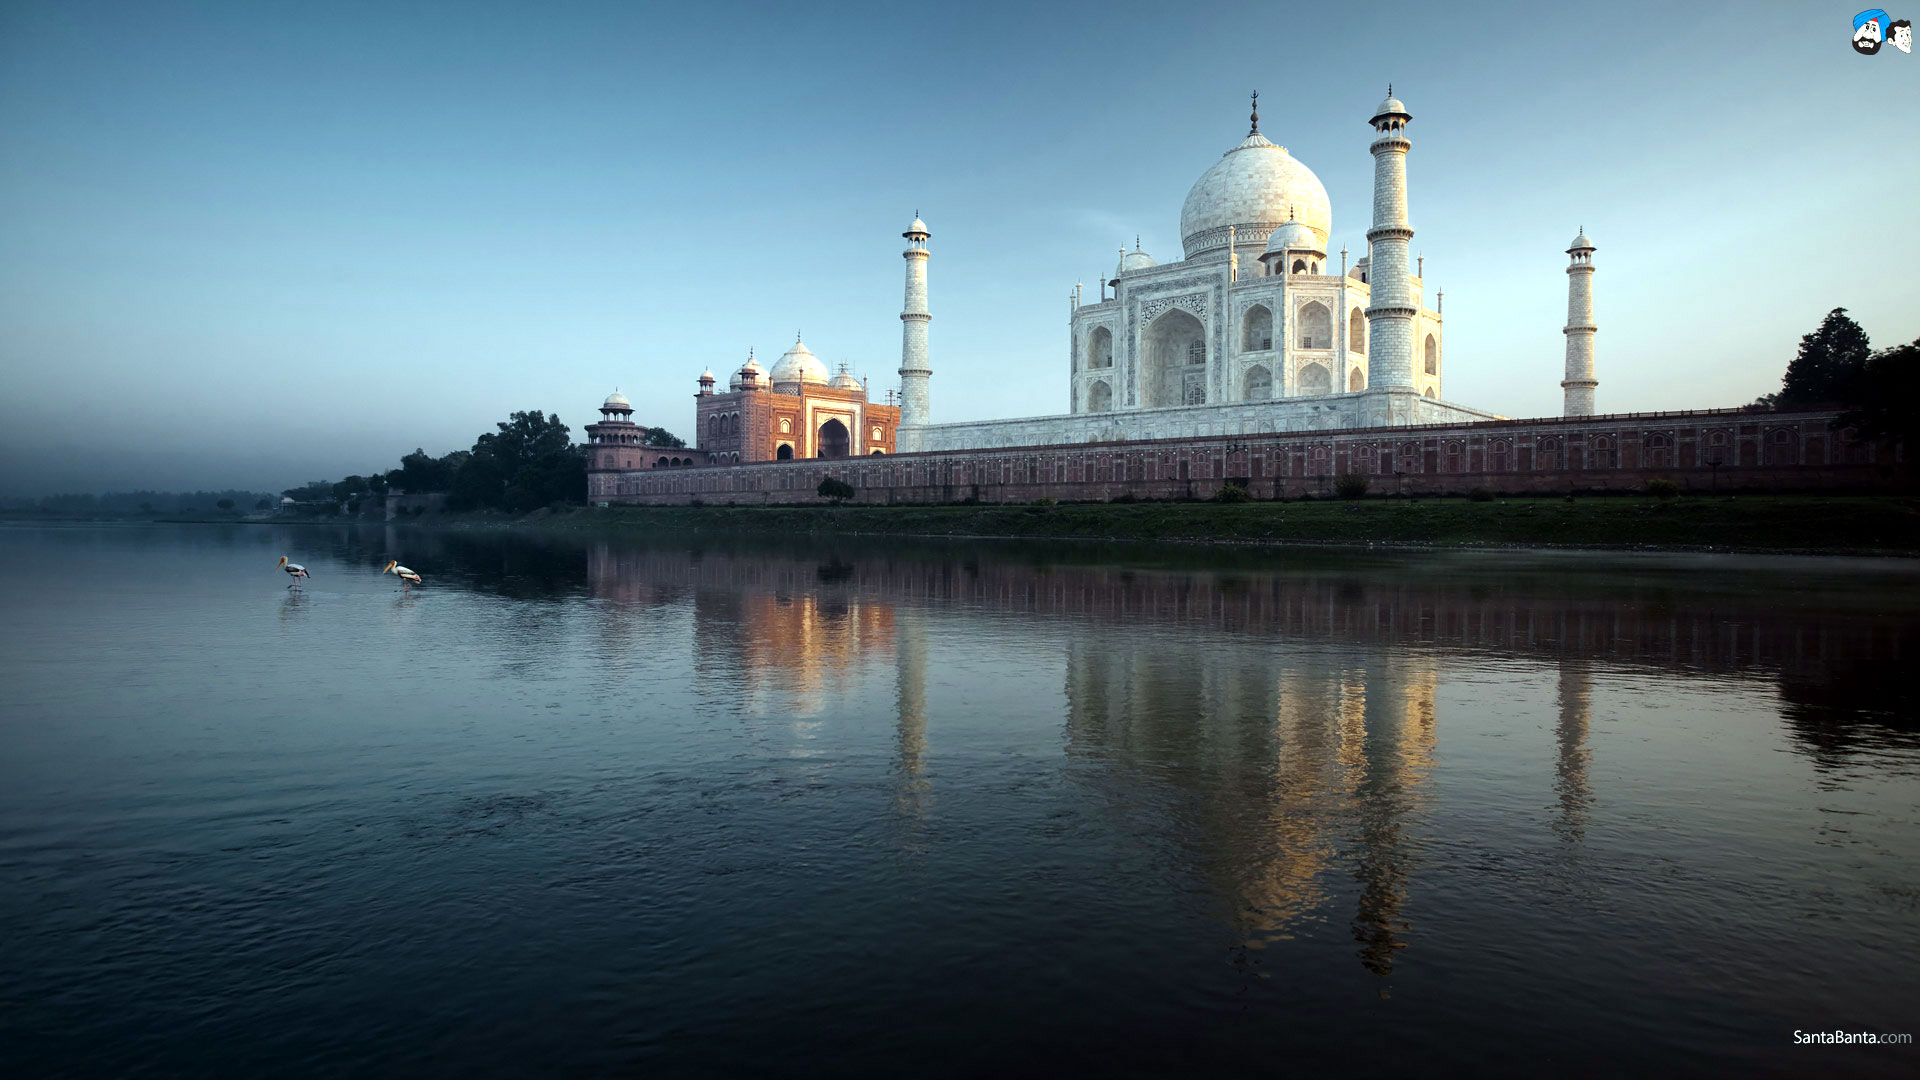 Santabanta Hd Wallpapers 1080p 4k - Taj Mahal Images Hd 1080p Download - 1920x1080  Wallpaper 